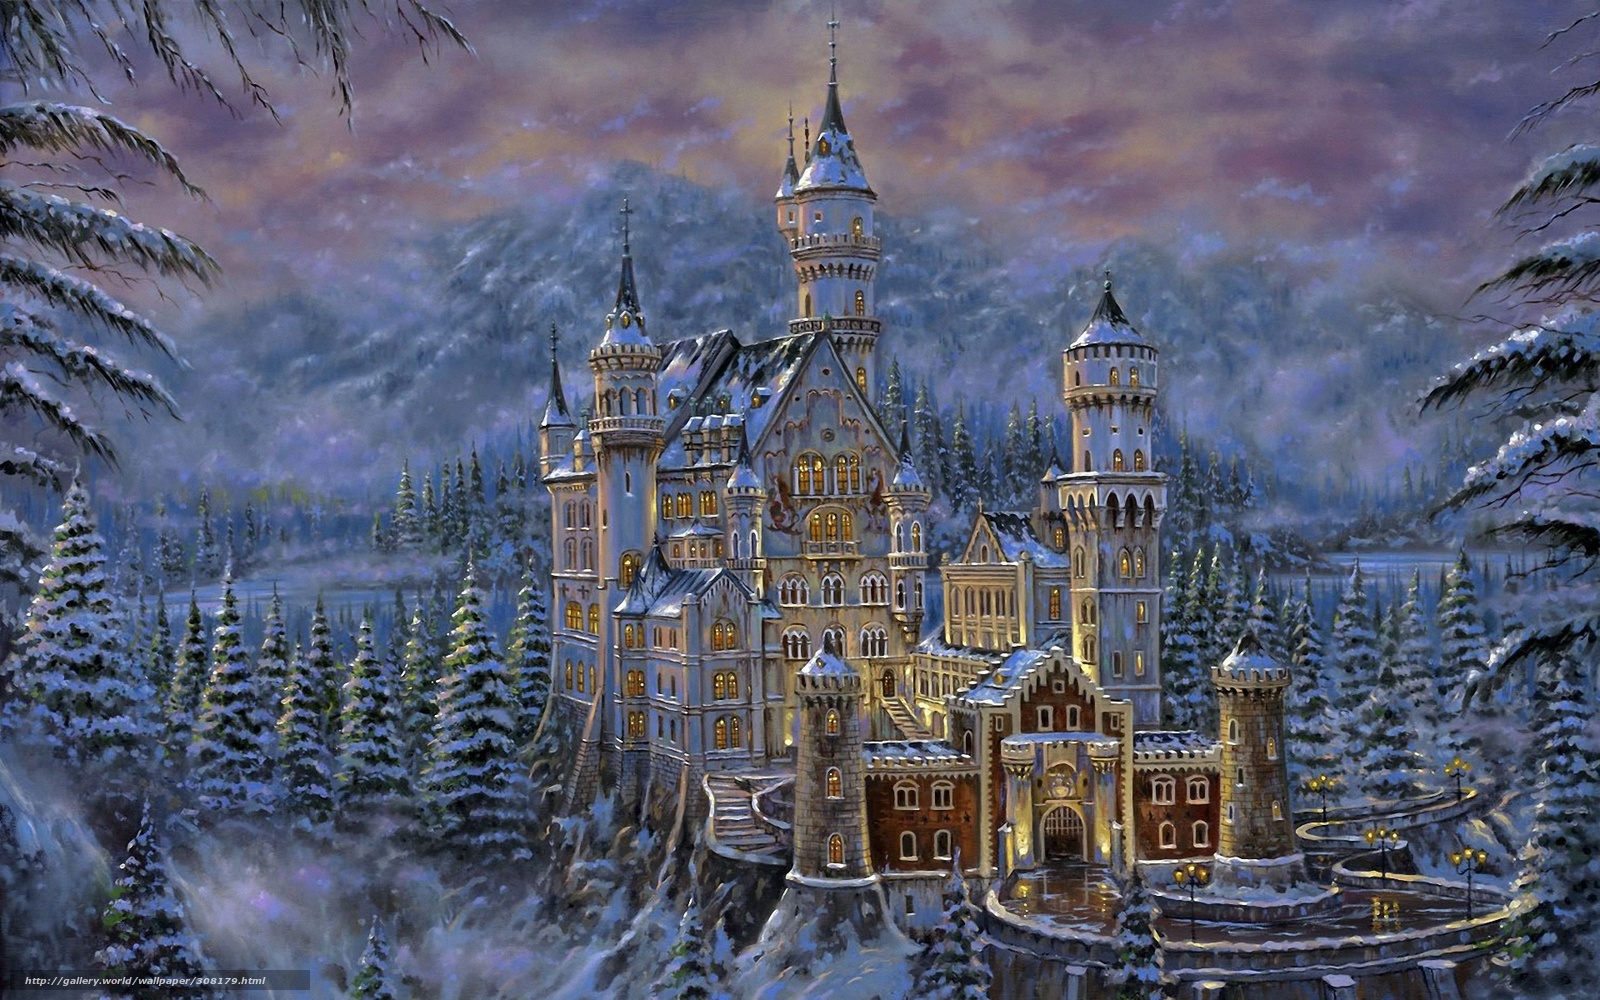 Download wallpaper Fairy winter castle free desktop wallpaper in the